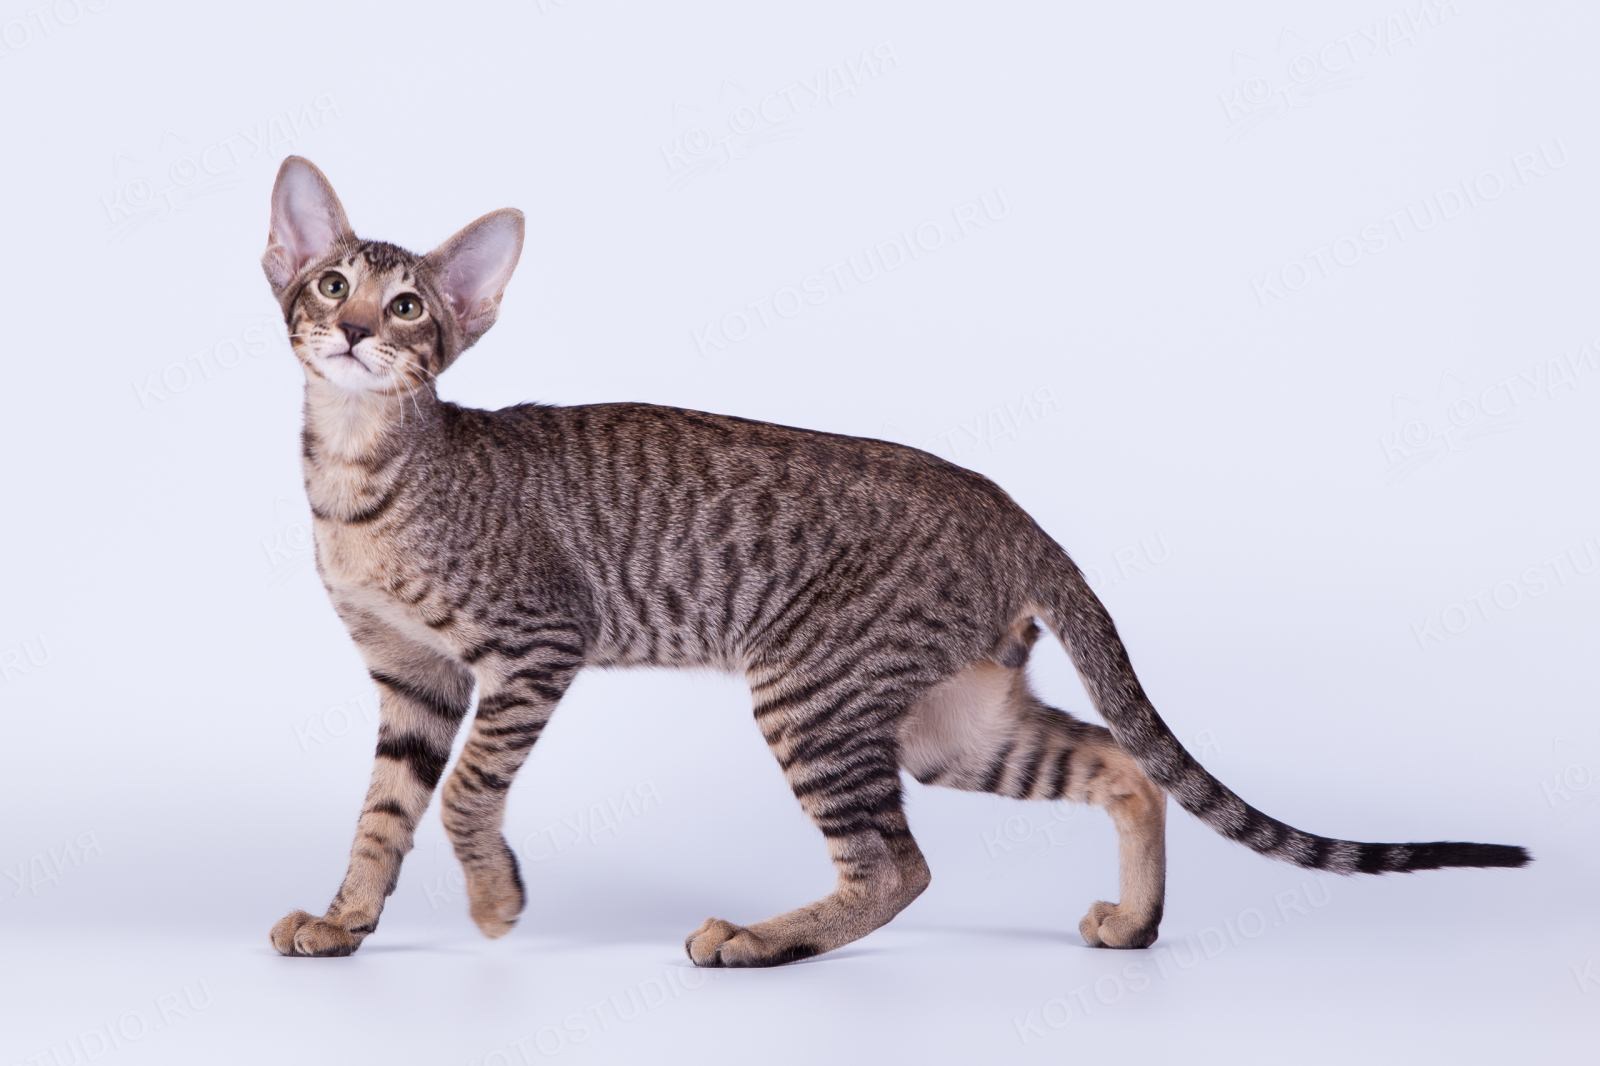 Окрасы ориентальной породы. Ориентальная кошка тигровая. Ориентальная кошка табби. Ориентал кошки полосатый окрас. Ориентальная кошка пятнистая.